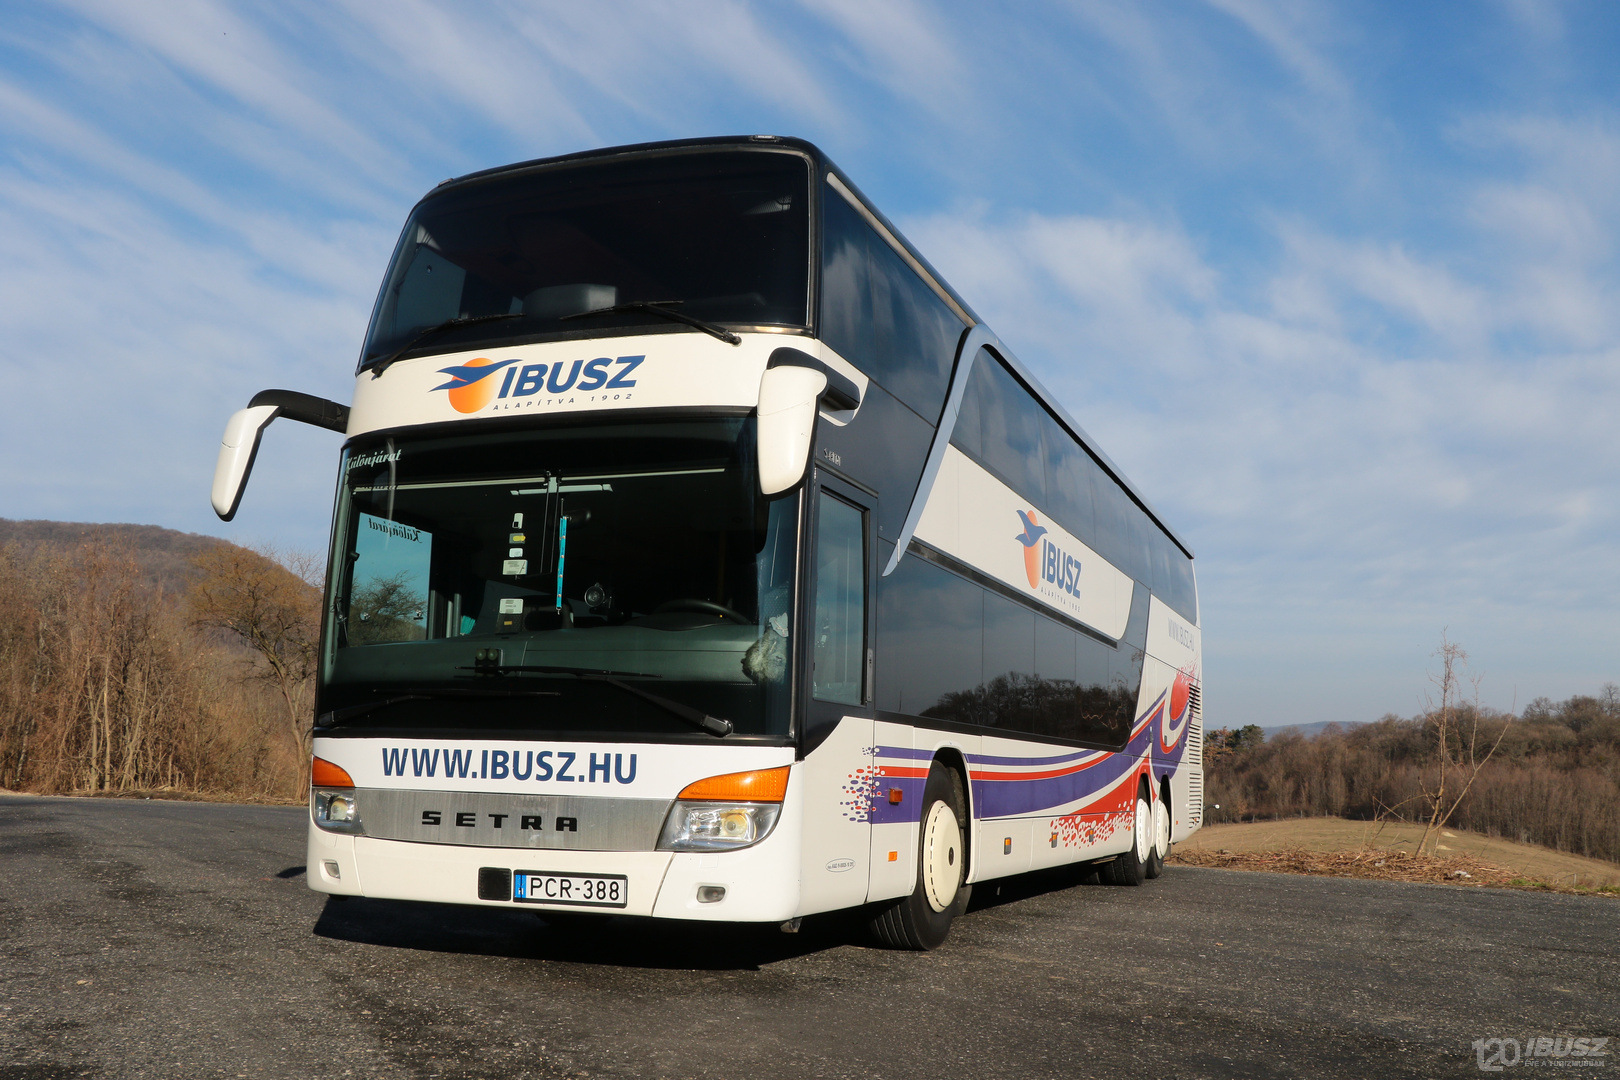 Az IBUSZ által szervezett Halkidiki expressz 2023 buszjárat 2022 nyarán is igazán esztétikus, kényelmes és biztonságos járművekkel szállítja az utazni vágyókat.